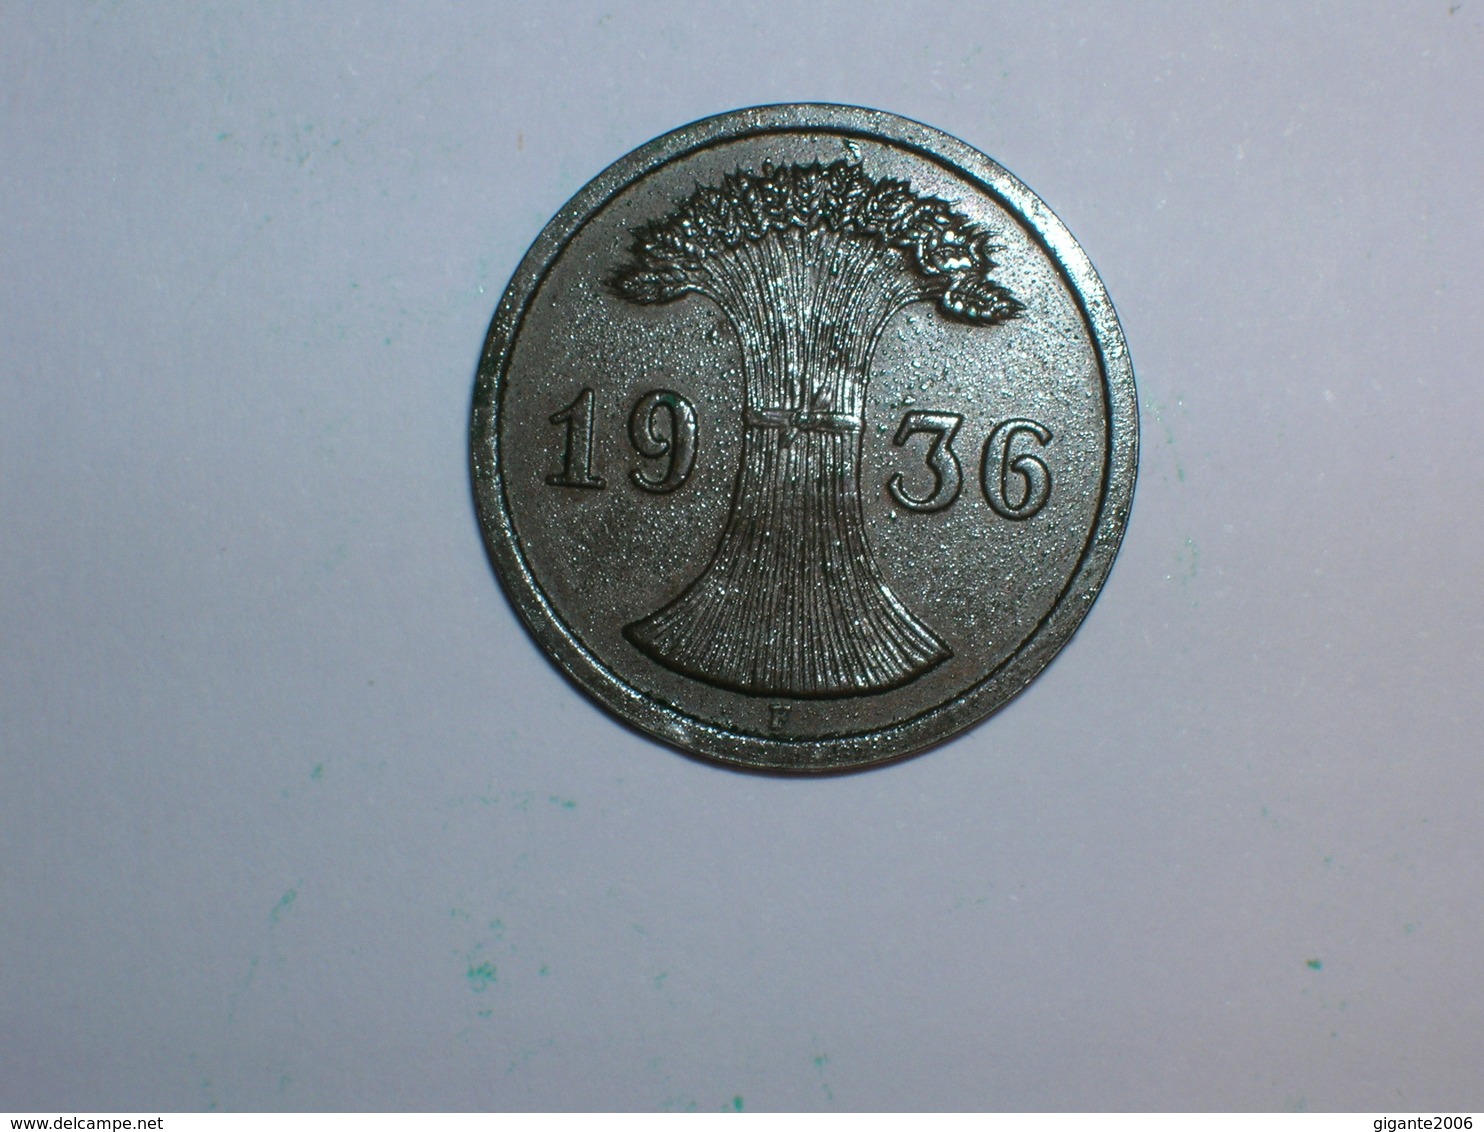 ALEMANIA 1 REICHPFENNIG 1936 F (1179) - 2 Reichspfennig